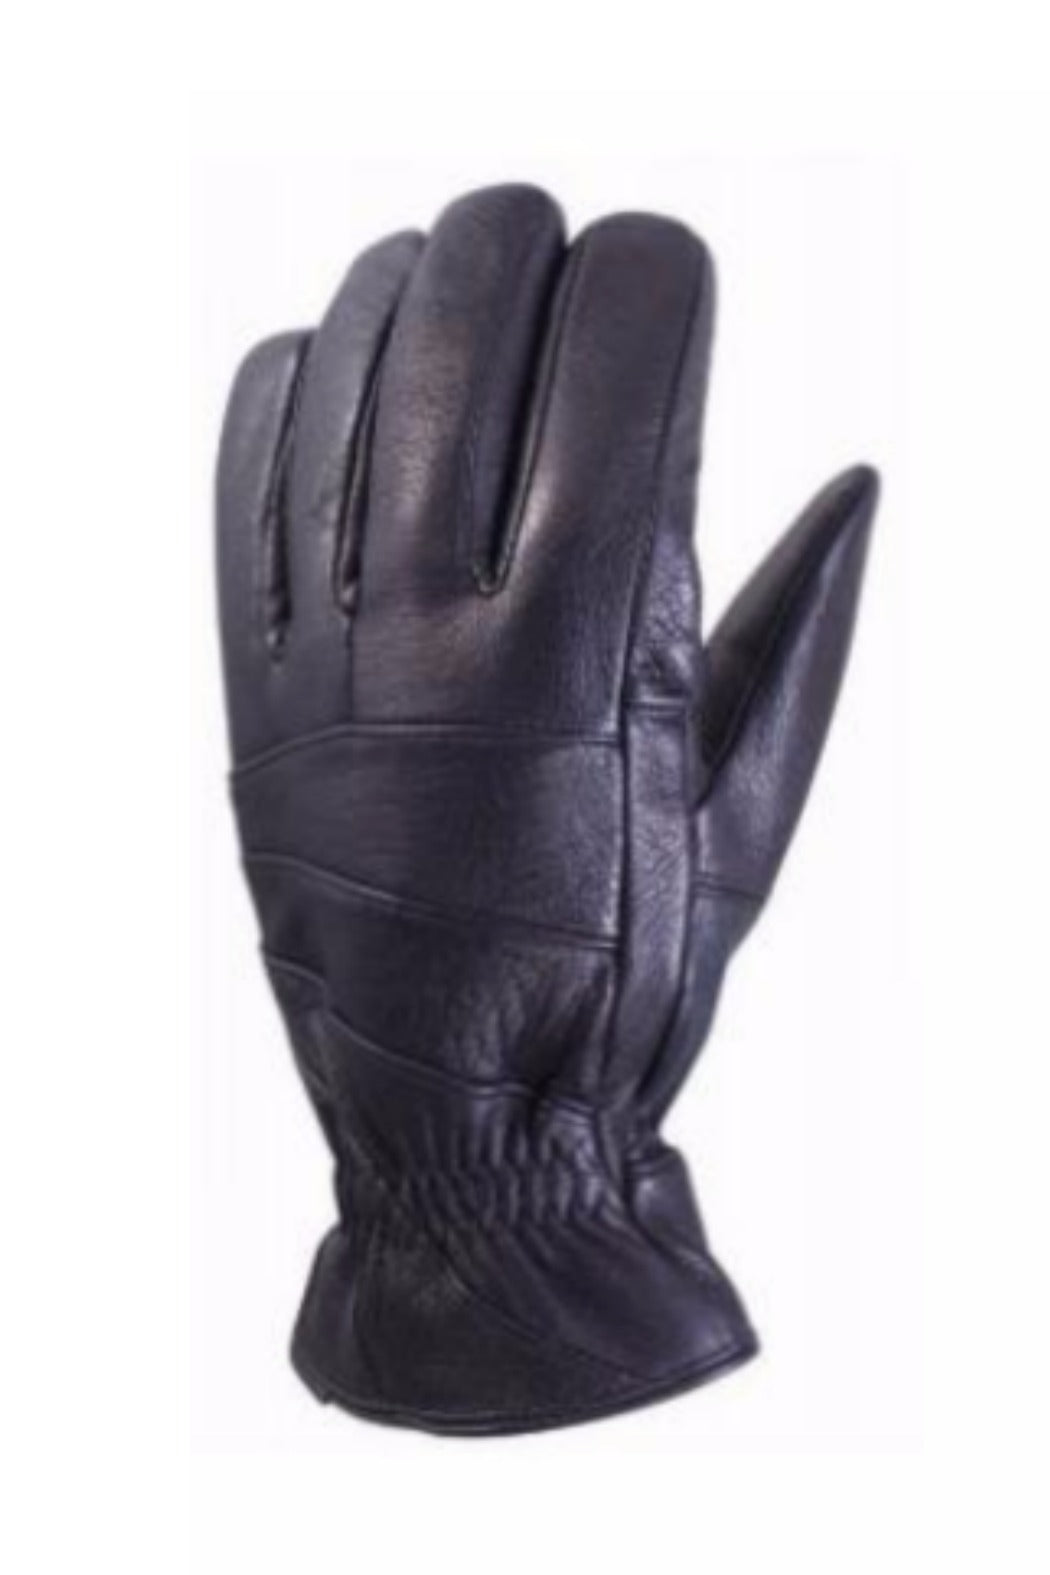 Slasher Glove